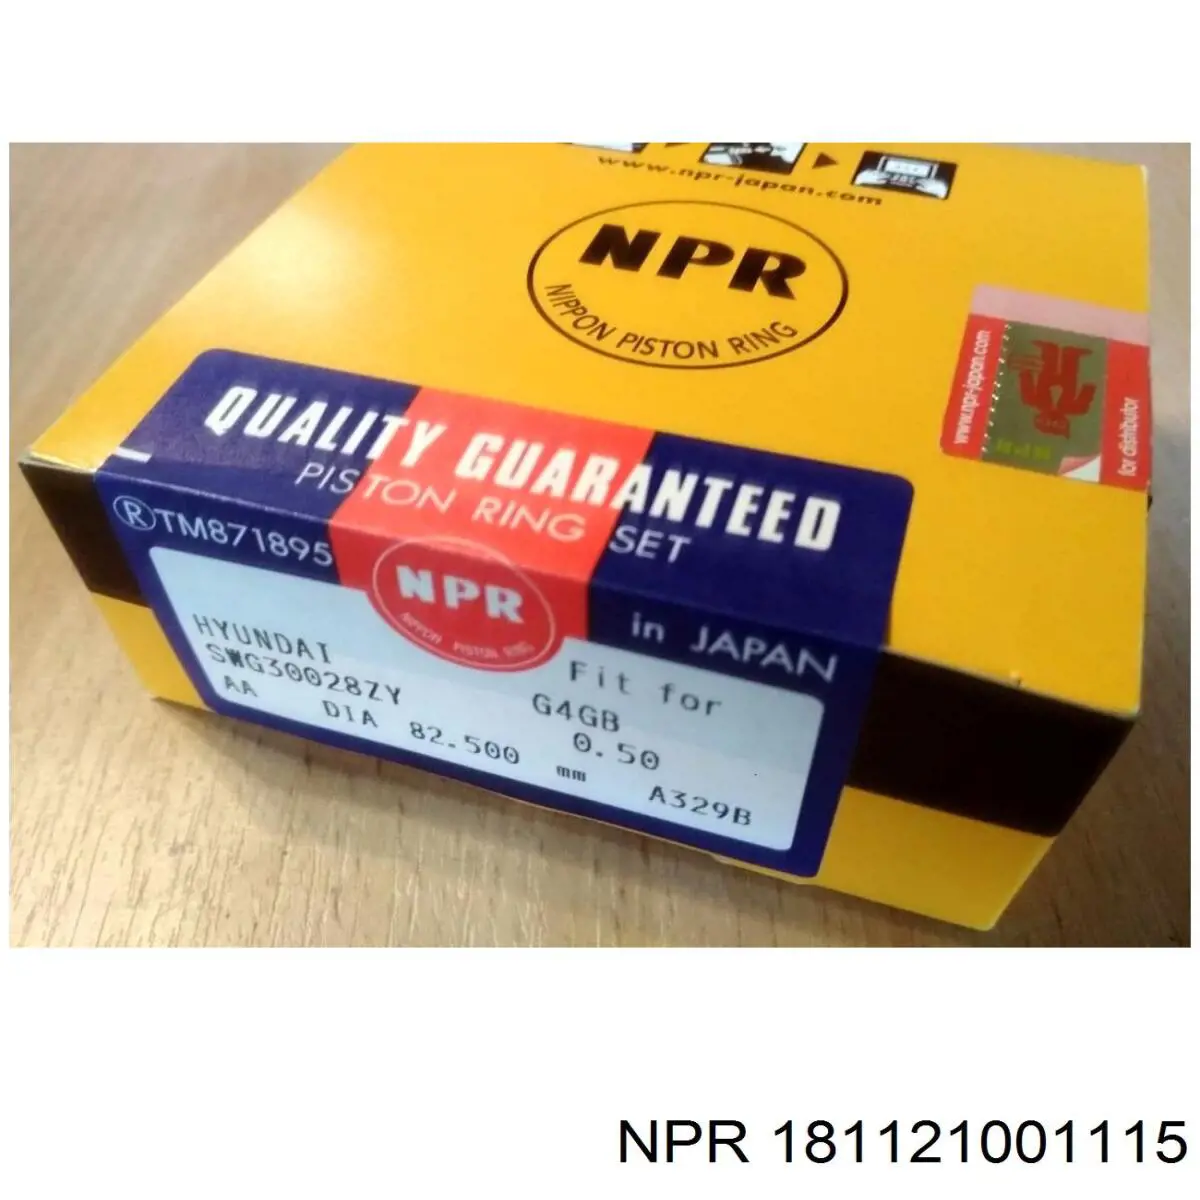 181121001115 NE/NPR juego de cojinetes de biela, cota de reparación +0,25 mm